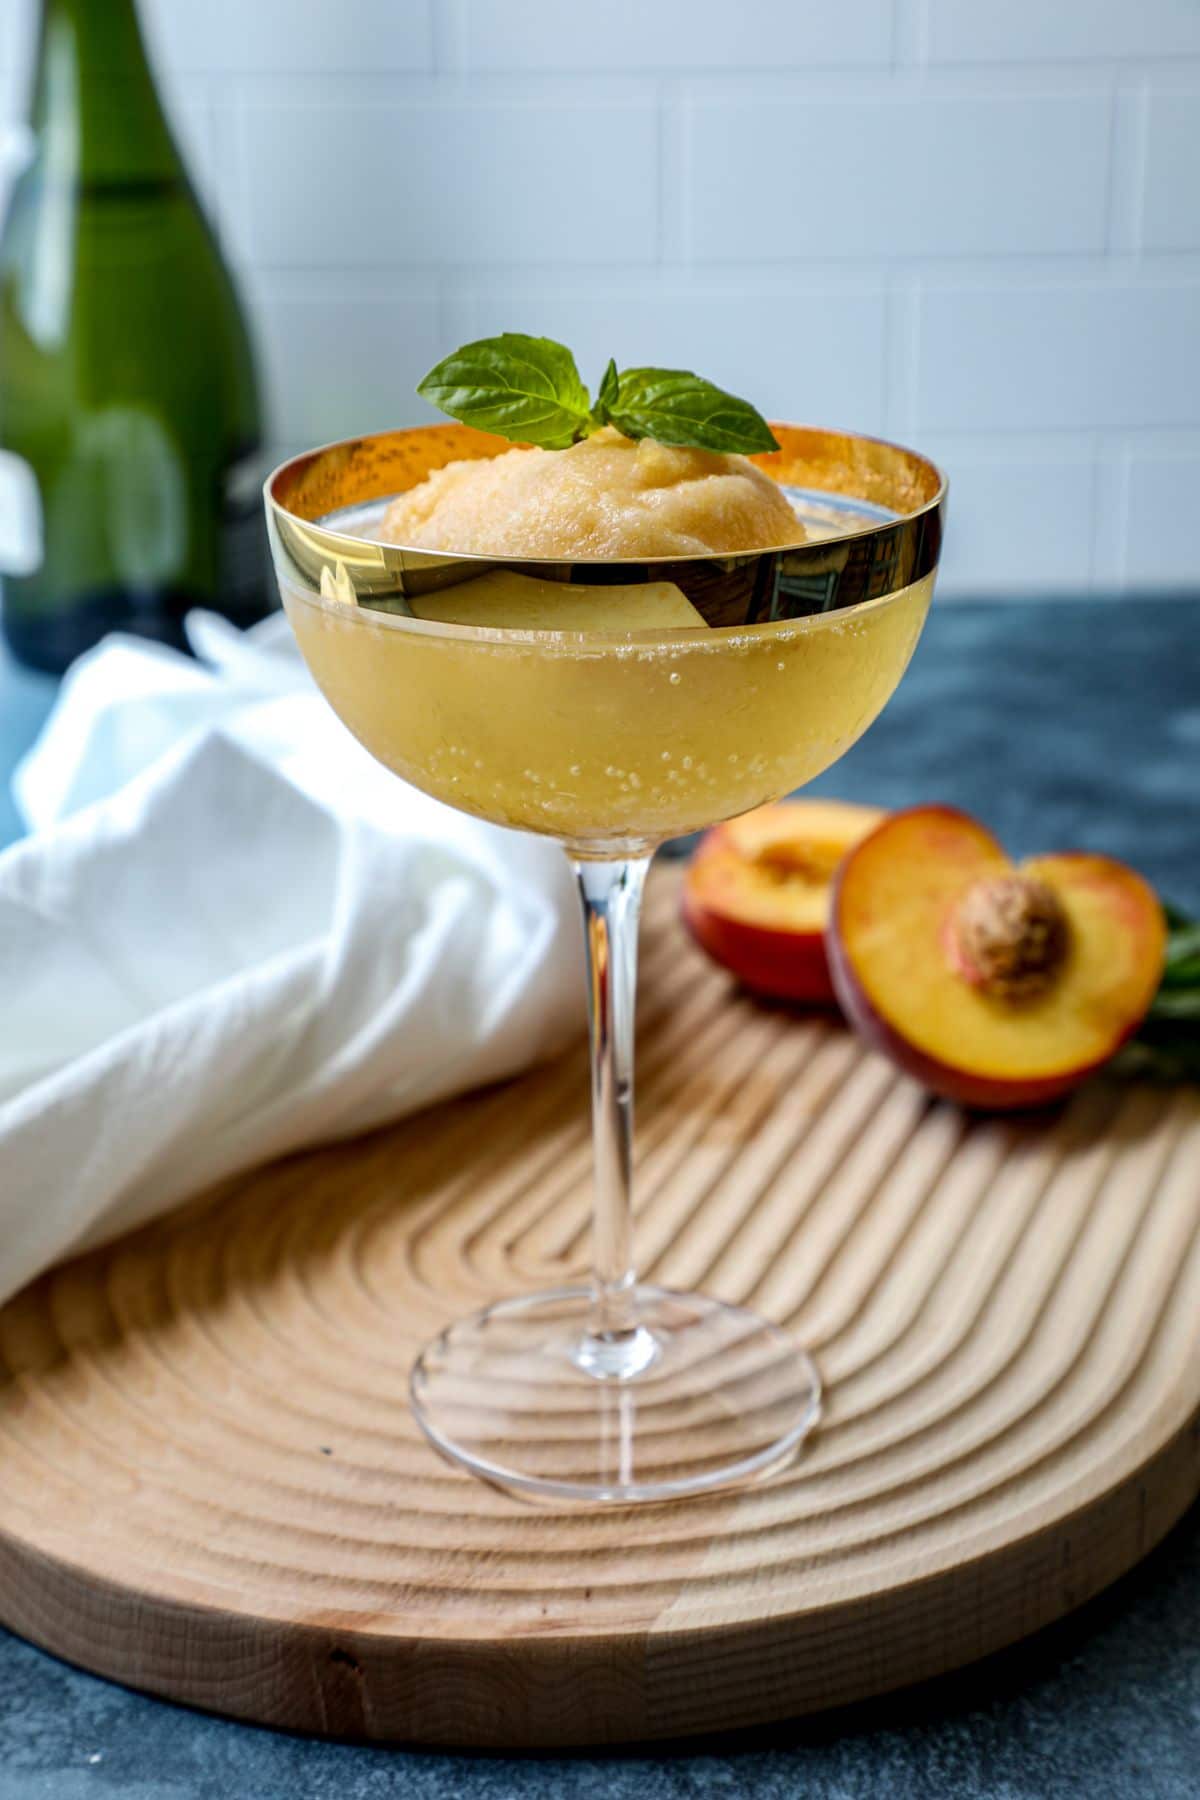 Peach Bellini Martini Drink Recipe